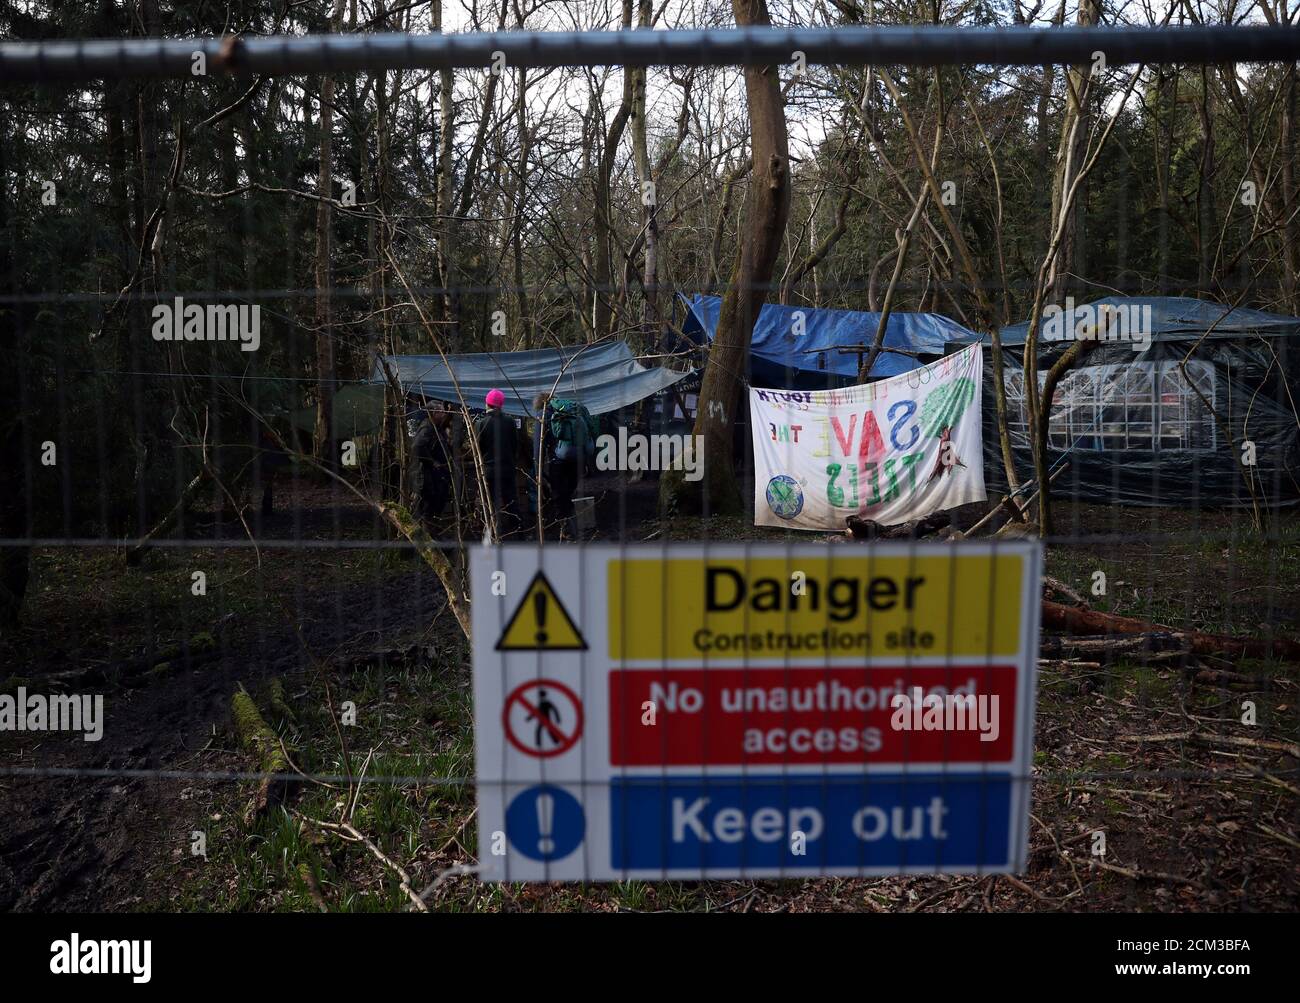 Un campamento de protesta contra el HS2 rodeado de árboles que serán talados para dar paso al proyecto ferroviario de alta velocidad HS2 de Gran Bretaña se ve en South Cubbington Wood cerca de Leamington Spa, Gran Bretaña, 2 de marzo de 2020. Foto tomada el 2 de marzo de 2020. REUTERS/Hannah McKay Foto de stock